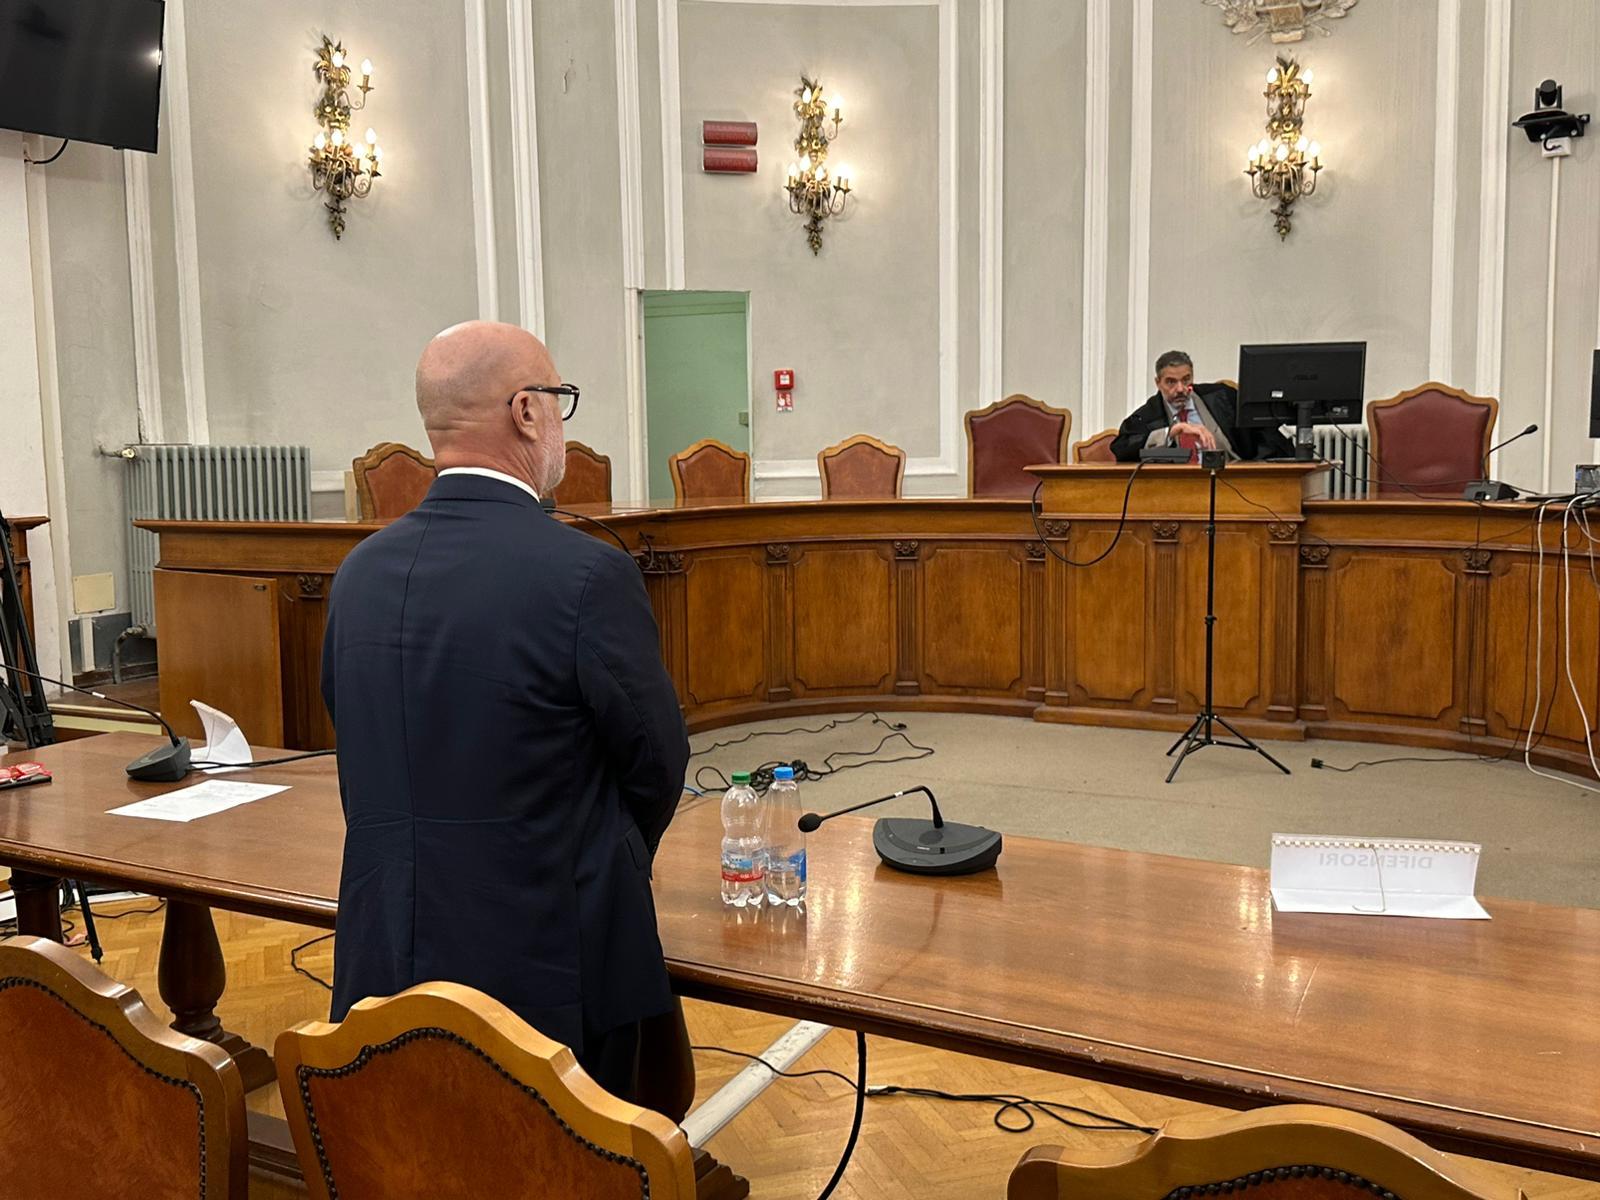 Condanna a tre anni per Nogarin, ex sindaco coinvolto nell'alluvione di Livorno